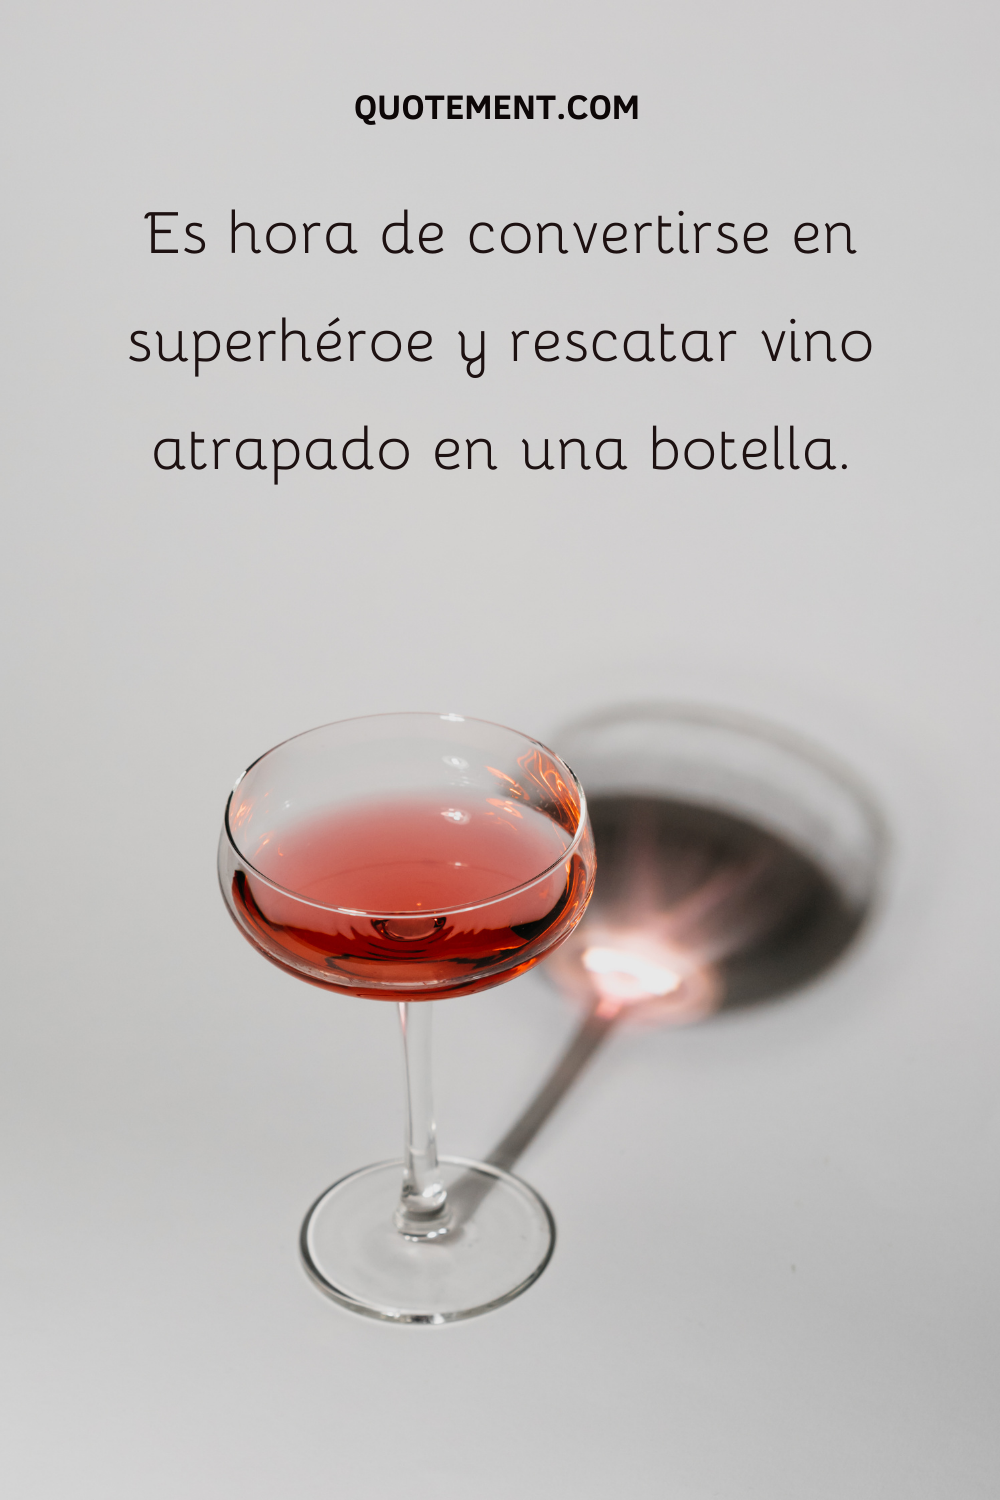 Es hora de convertirse en superhéroe y rescatar un vino atrapado en una botella